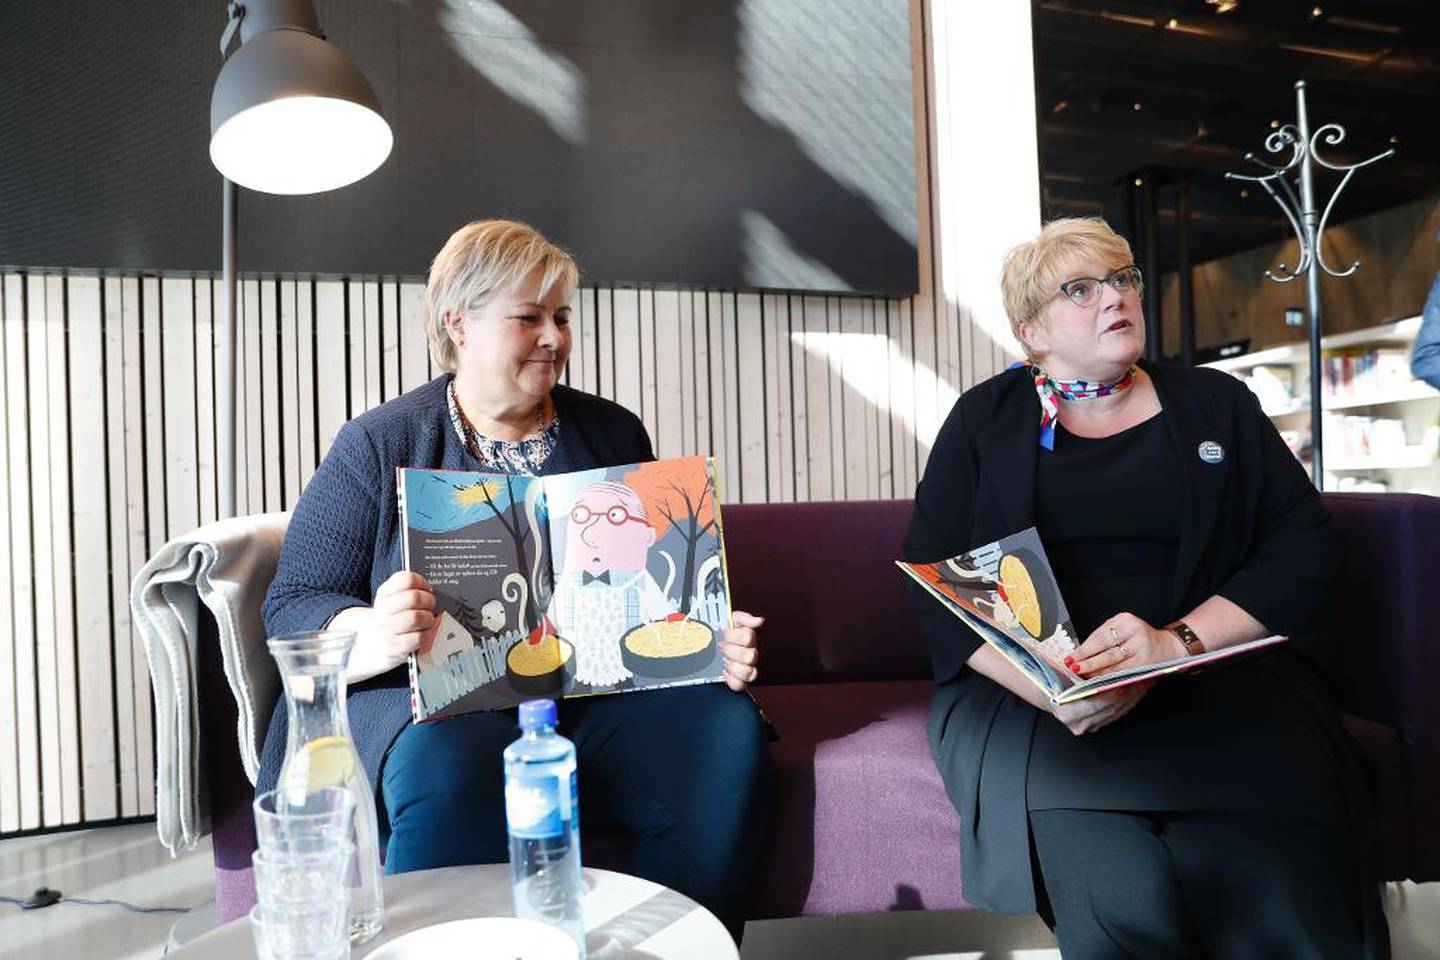 Lørdag møttes statsminister Erna Solberg og Venstre-leder Trine Skei Grande i Stjørdal. Glipper sperregrensen for Venstre, mister trolig Solberg statsministerjobben.